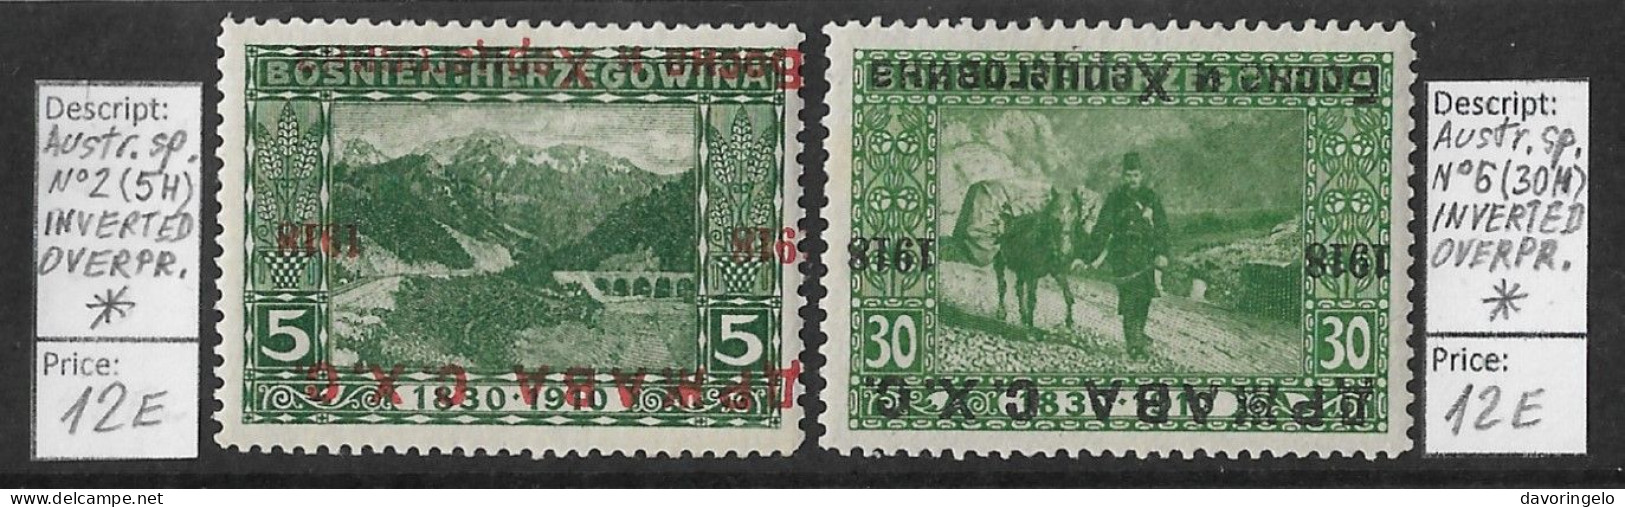 Bosnia-Herzegovina/Yugoslavia/SHS, 1918 Year, Austr. Sp. No 2 (5H) & No 6 (30H), INVERTED OVERPRINT, (*) - Bosnia And Herzegovina